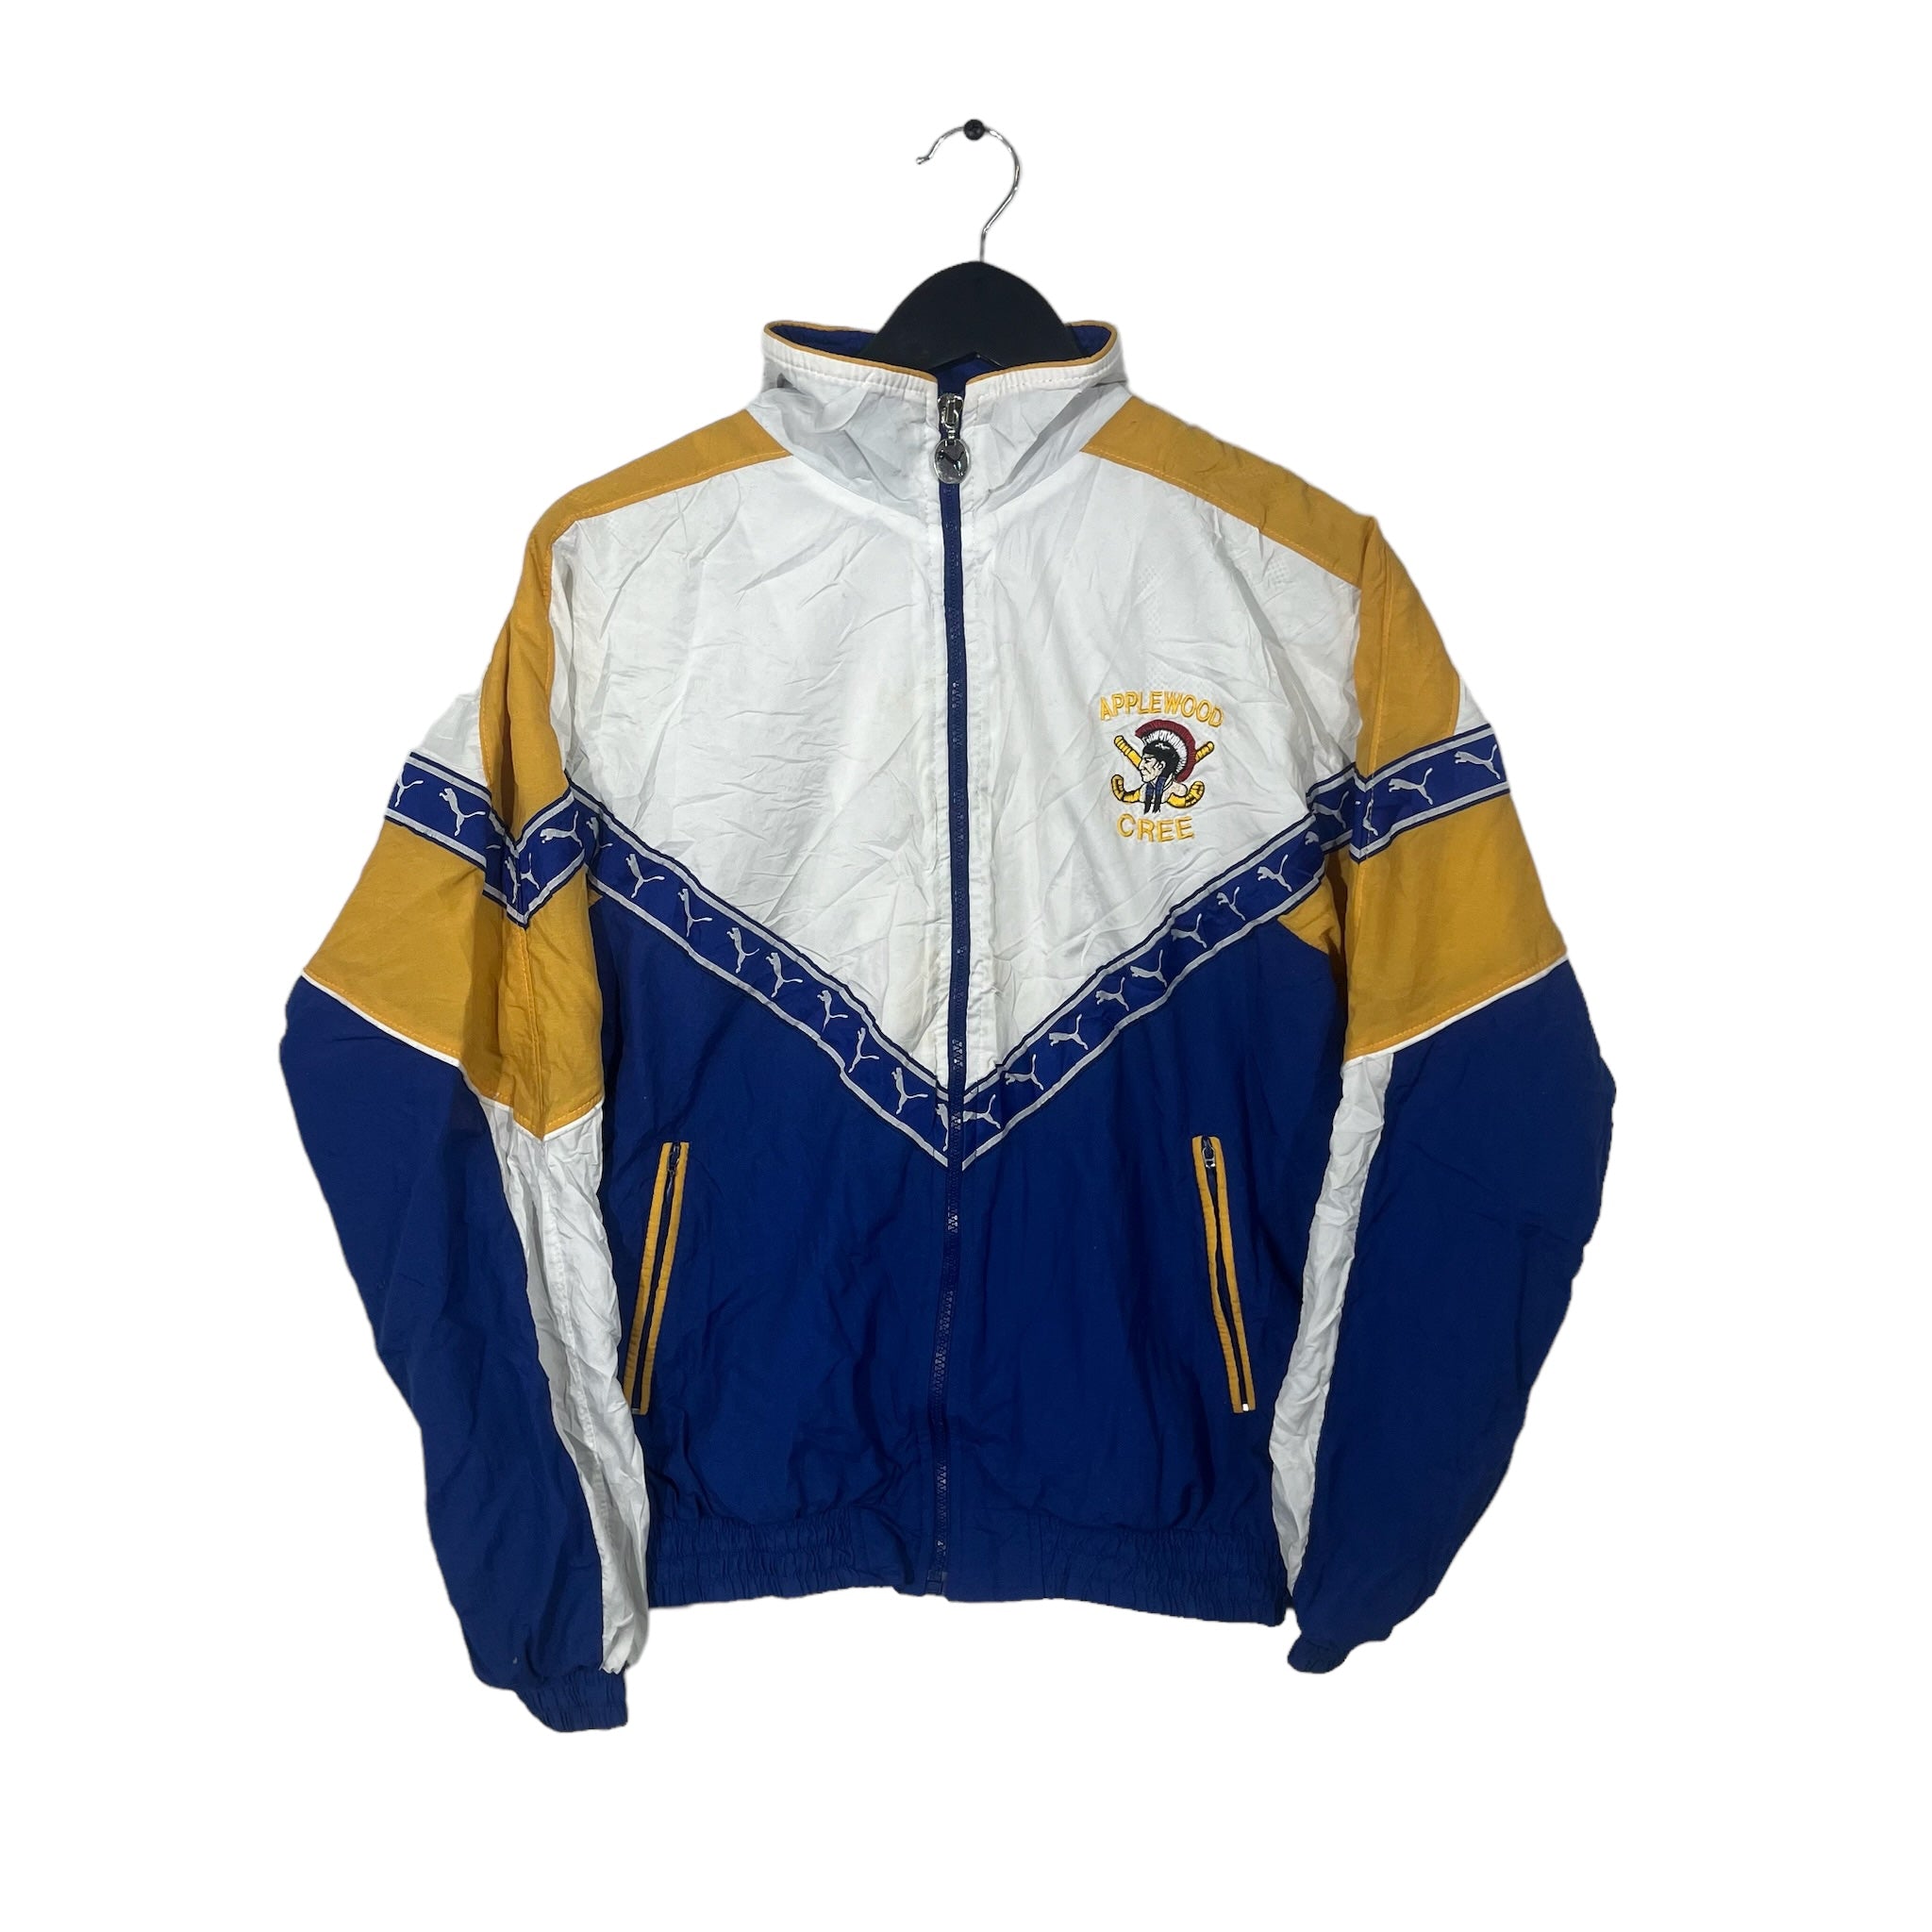 Vintage Puma Applewood Cree Light Track Jacket Youth